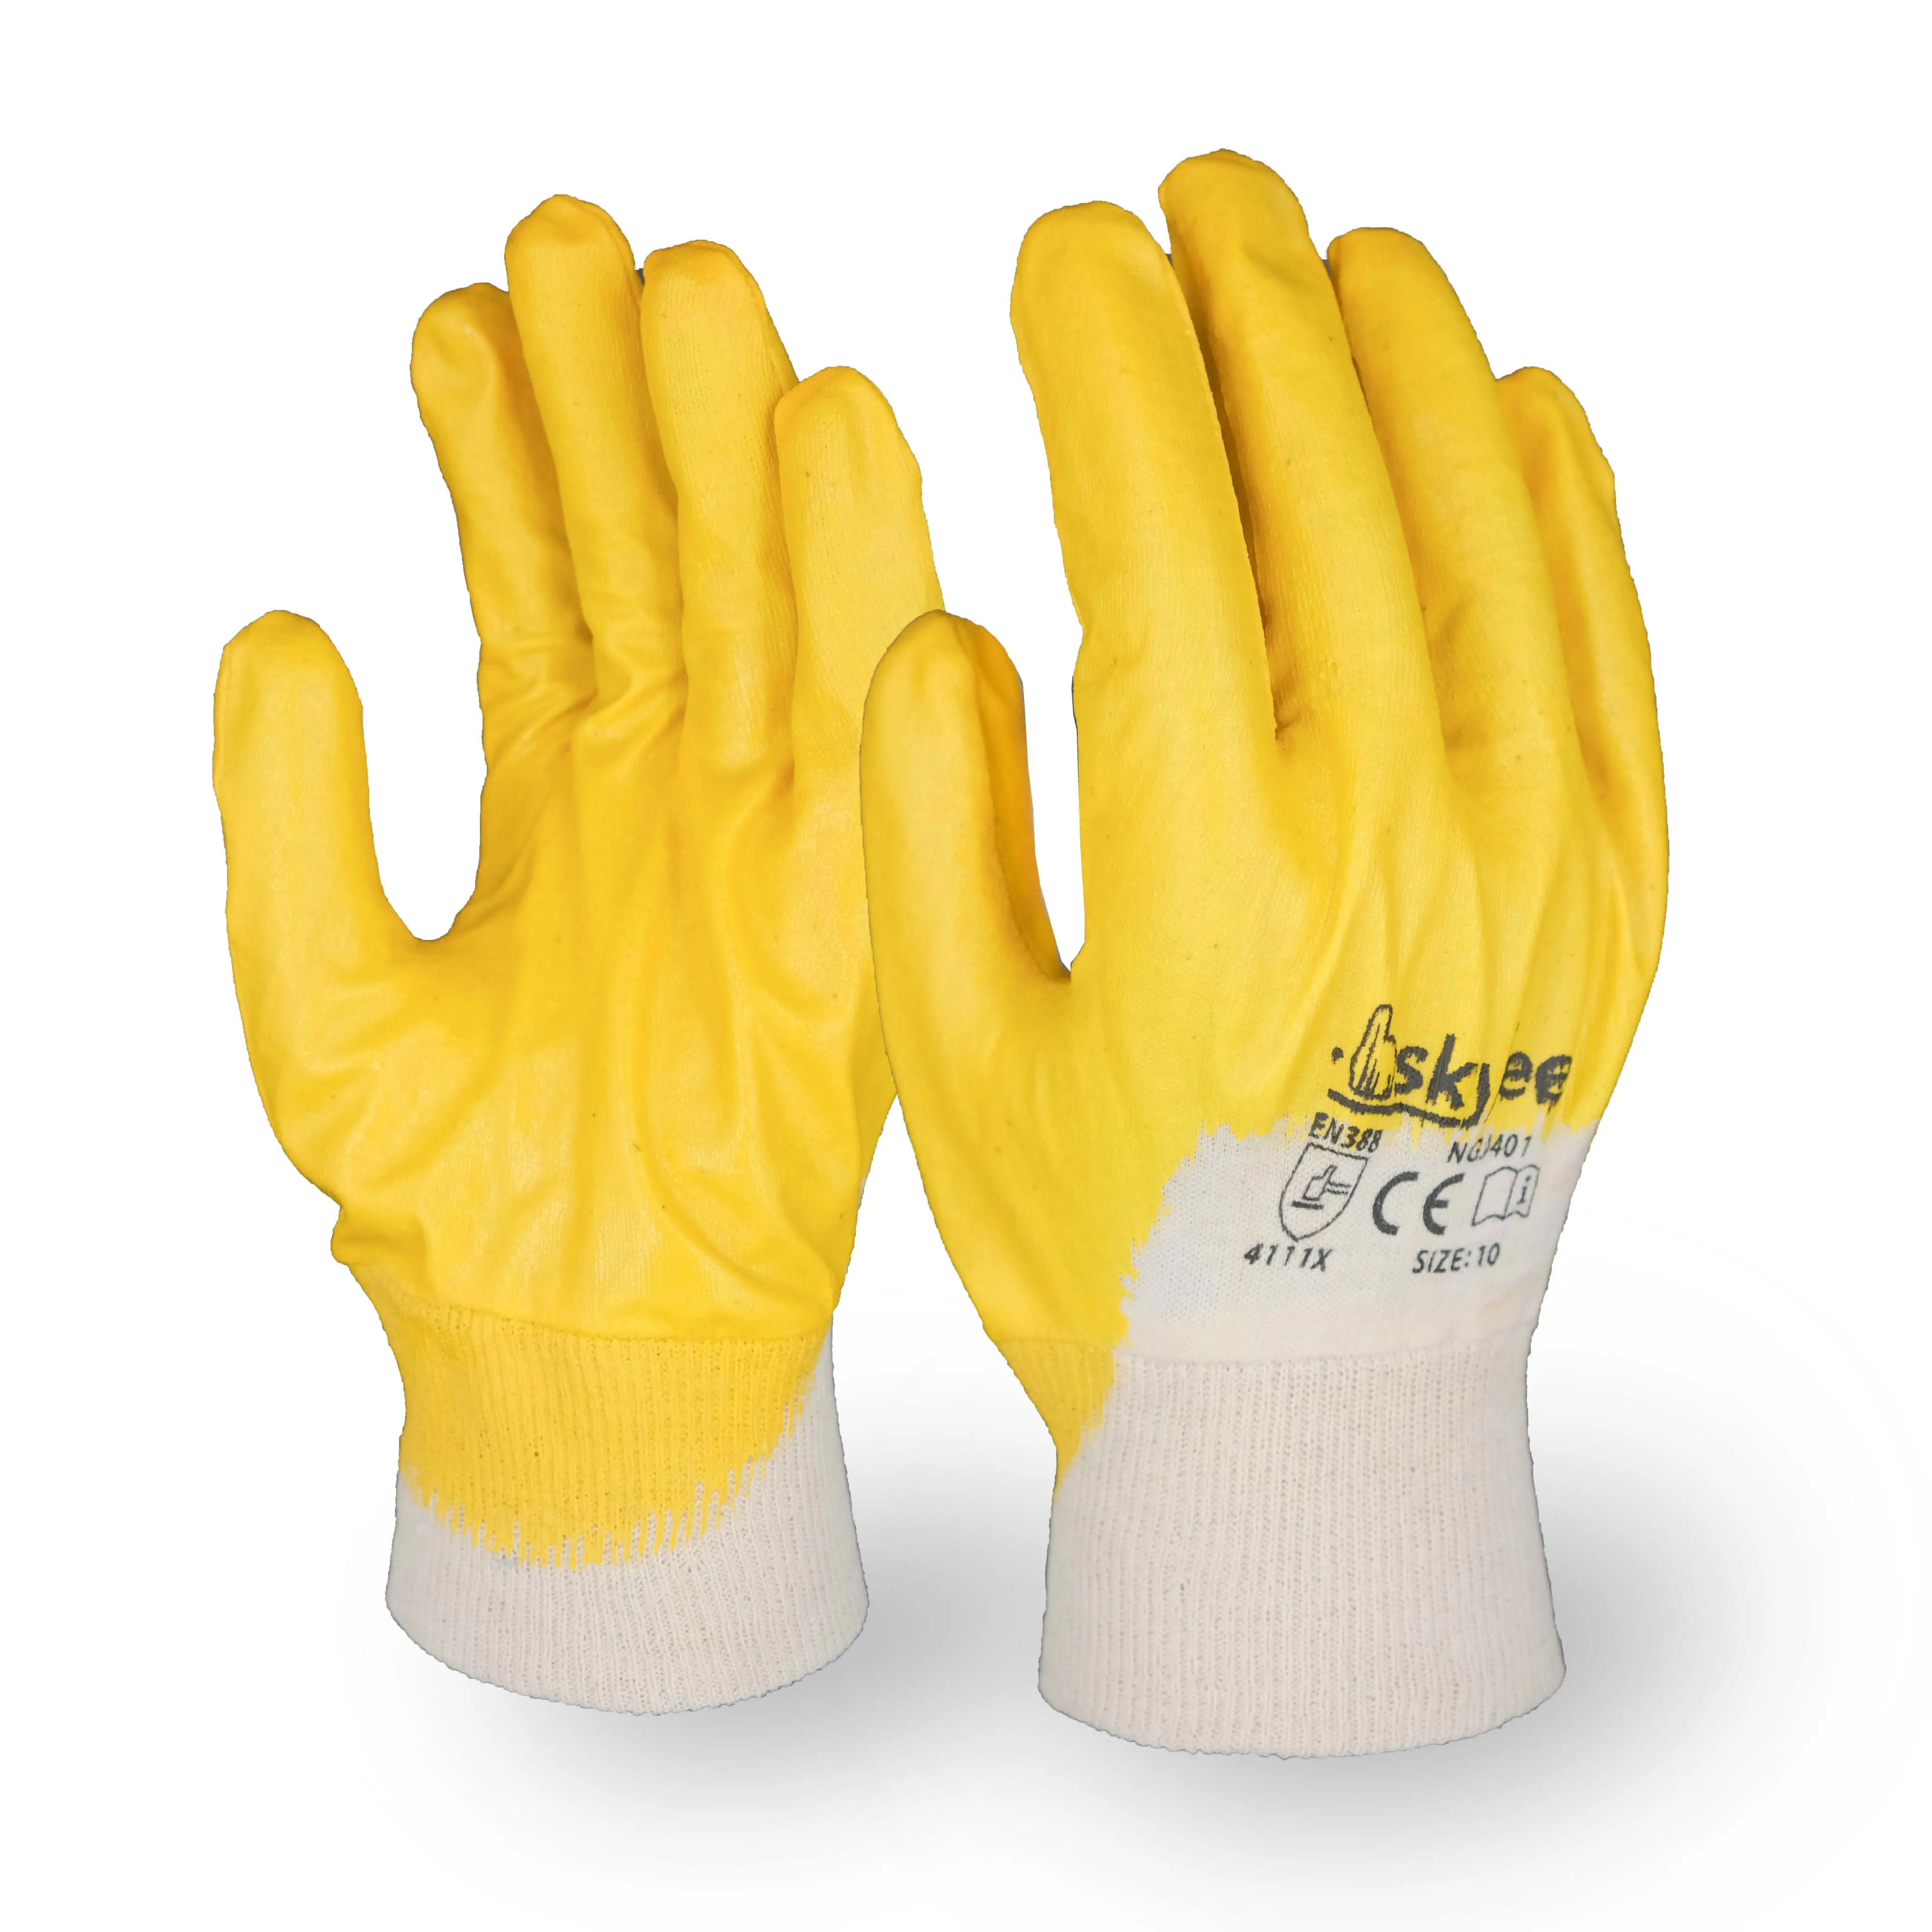 SKYEE gants industriels de construction de protection chimique en nitrile durable à double revêtement en caoutchouc naturel anti-coupure pour le nettoyage